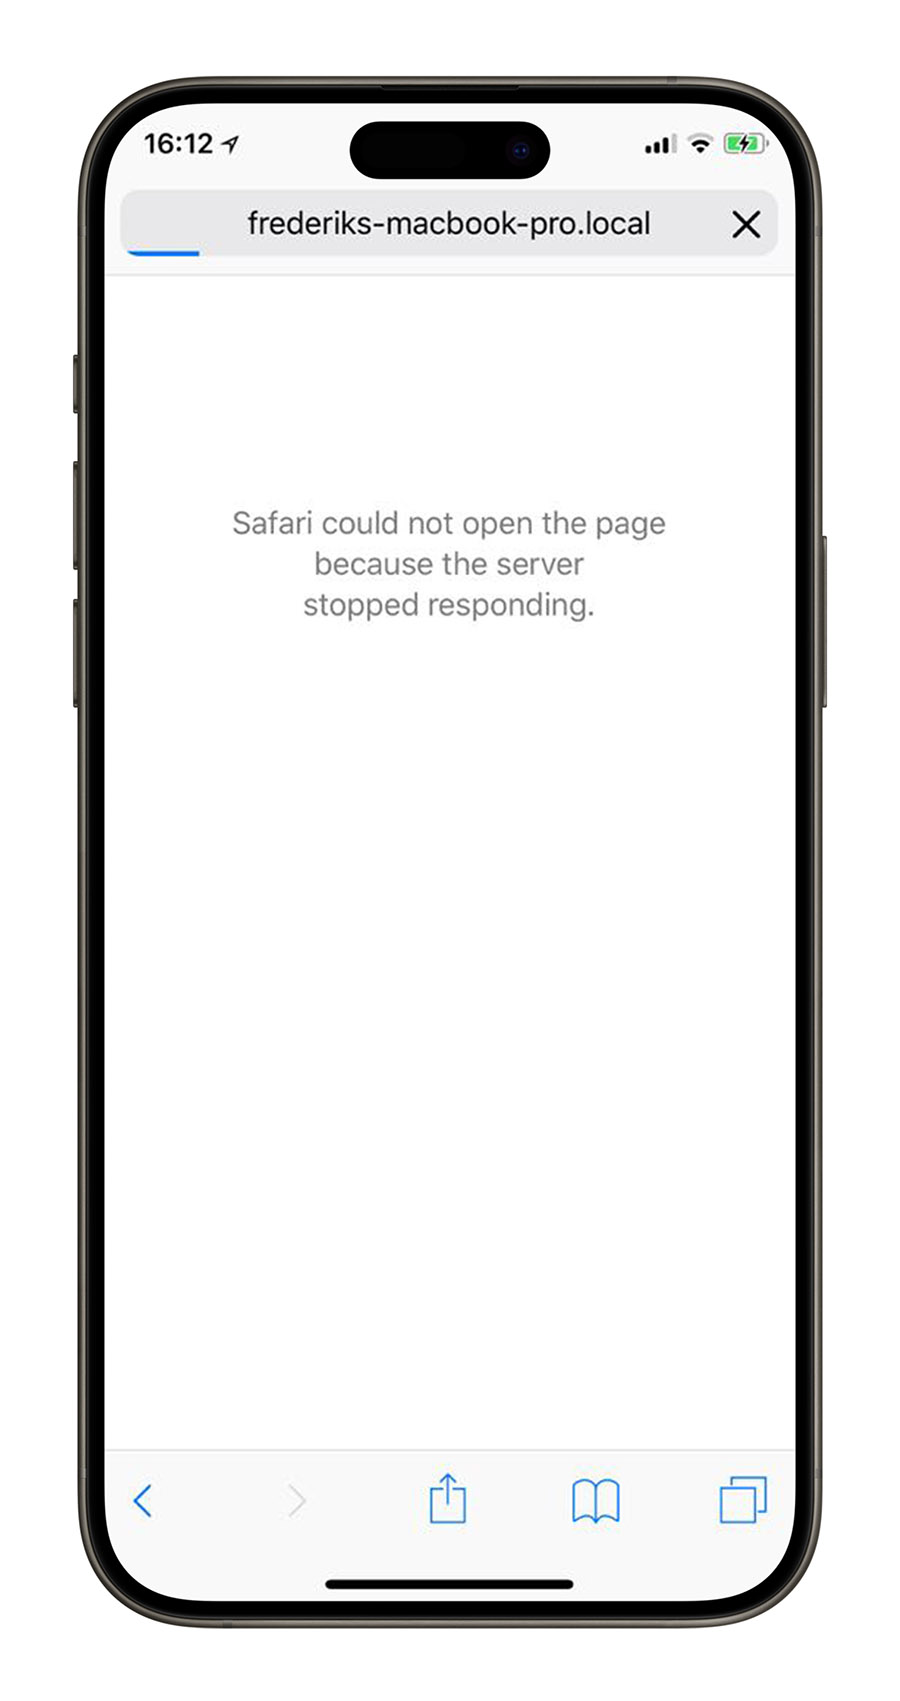 iPhone 清除快取 Safari 網站資料 瀏覽紀錄